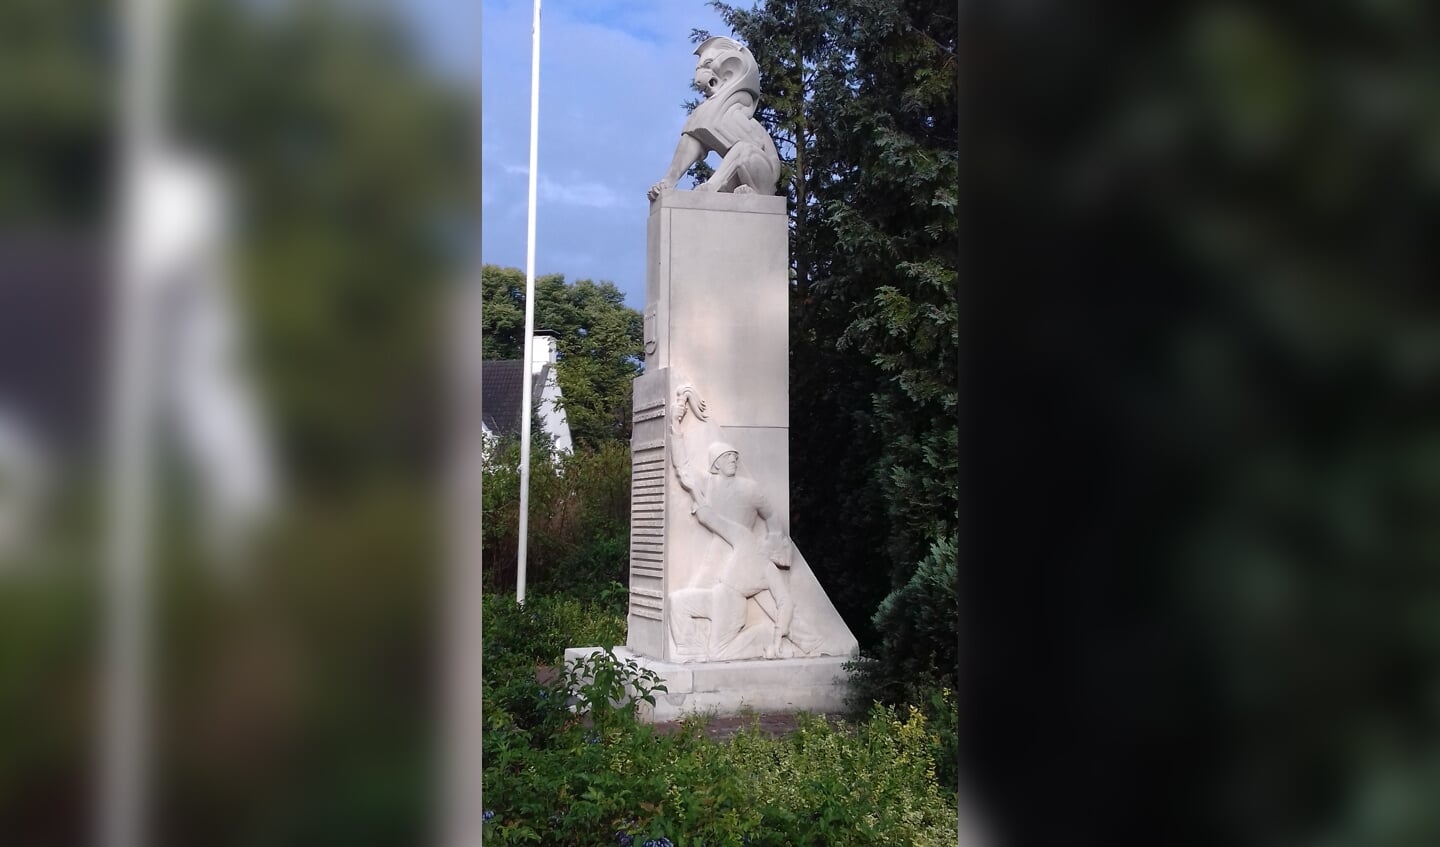 Het herdenkingsmonument van Bilthoven gedenkt alle slachtoffers van de Tweede Wereldoorlog. Het gedenkteken staat langs de oprijlaan naar het gemeentehuis 'Jagtlust' aan de Soestdijkseweg in Bilthoven. Het wordt ook wel 'Verzetsmonument Bilthoven' genoemd. Het rechter reliëf (foto) toont een soldaat